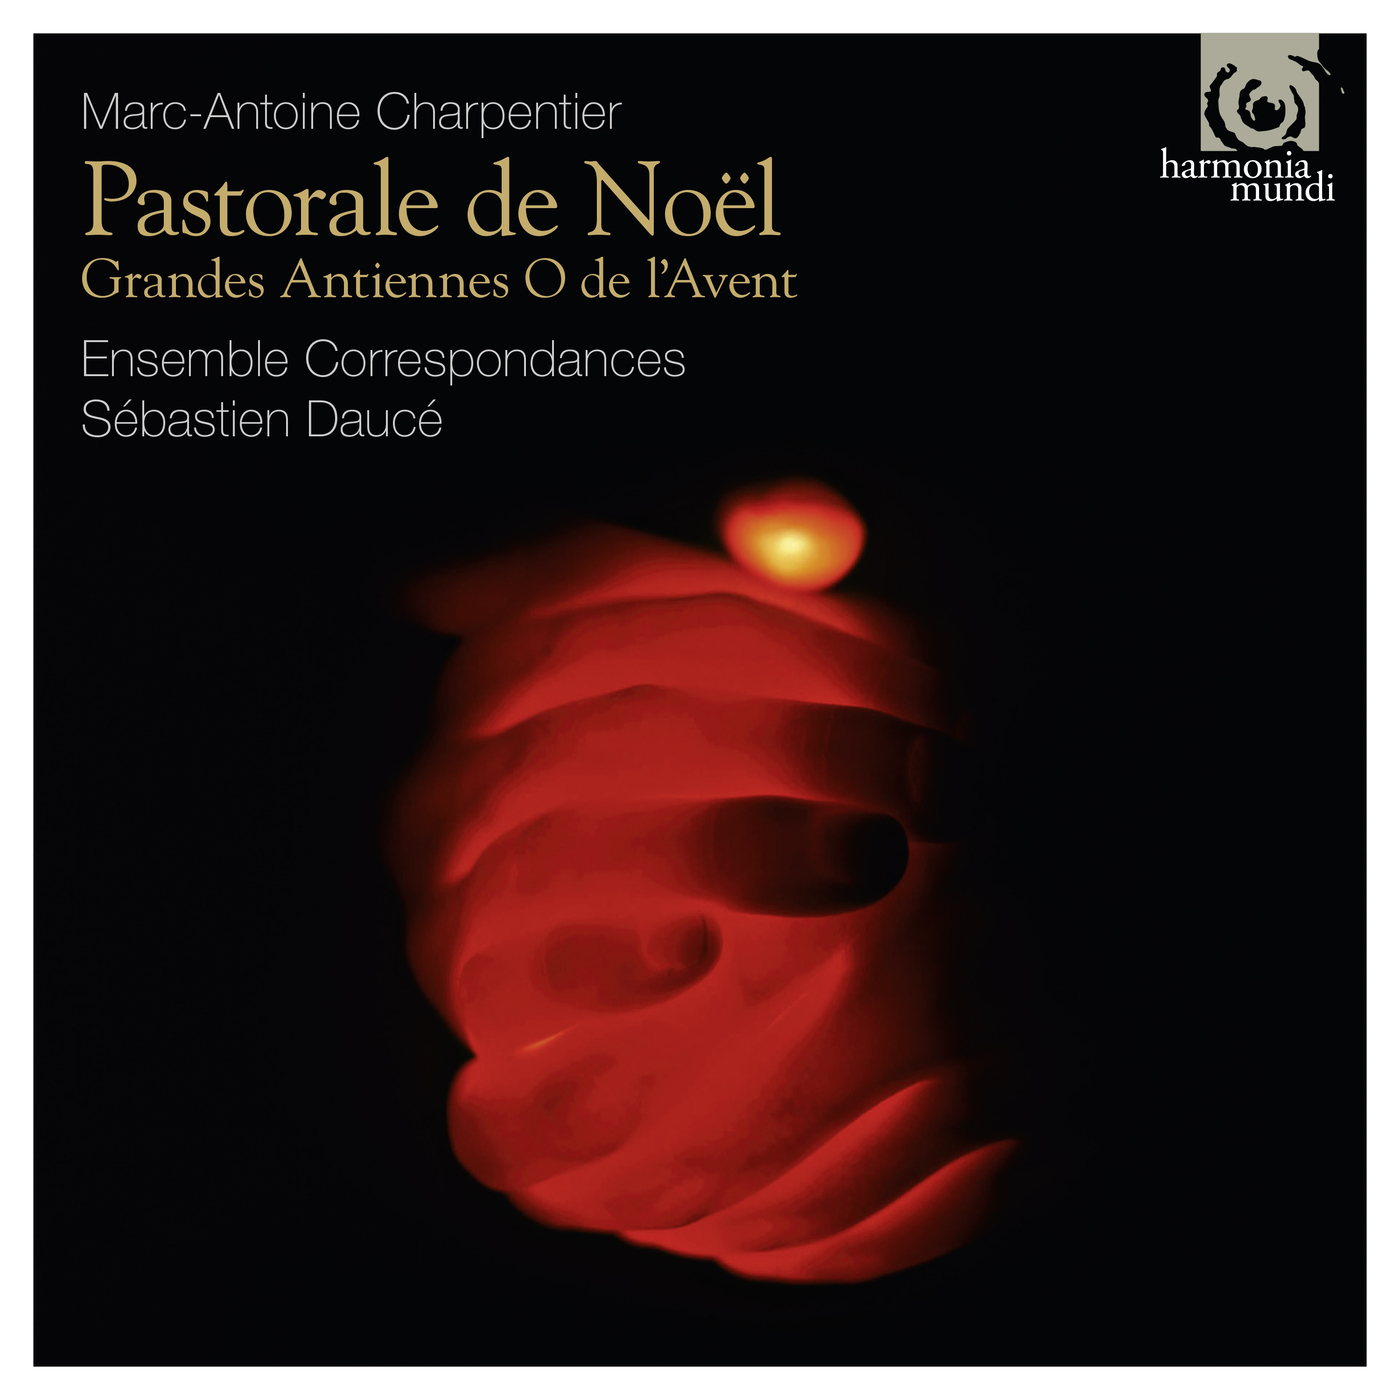 Ensemble Correspondances & Sebastien Dauce - Charpentier-Pastorale de Noel (2016) [FLAC 24bit/88,2kHz]